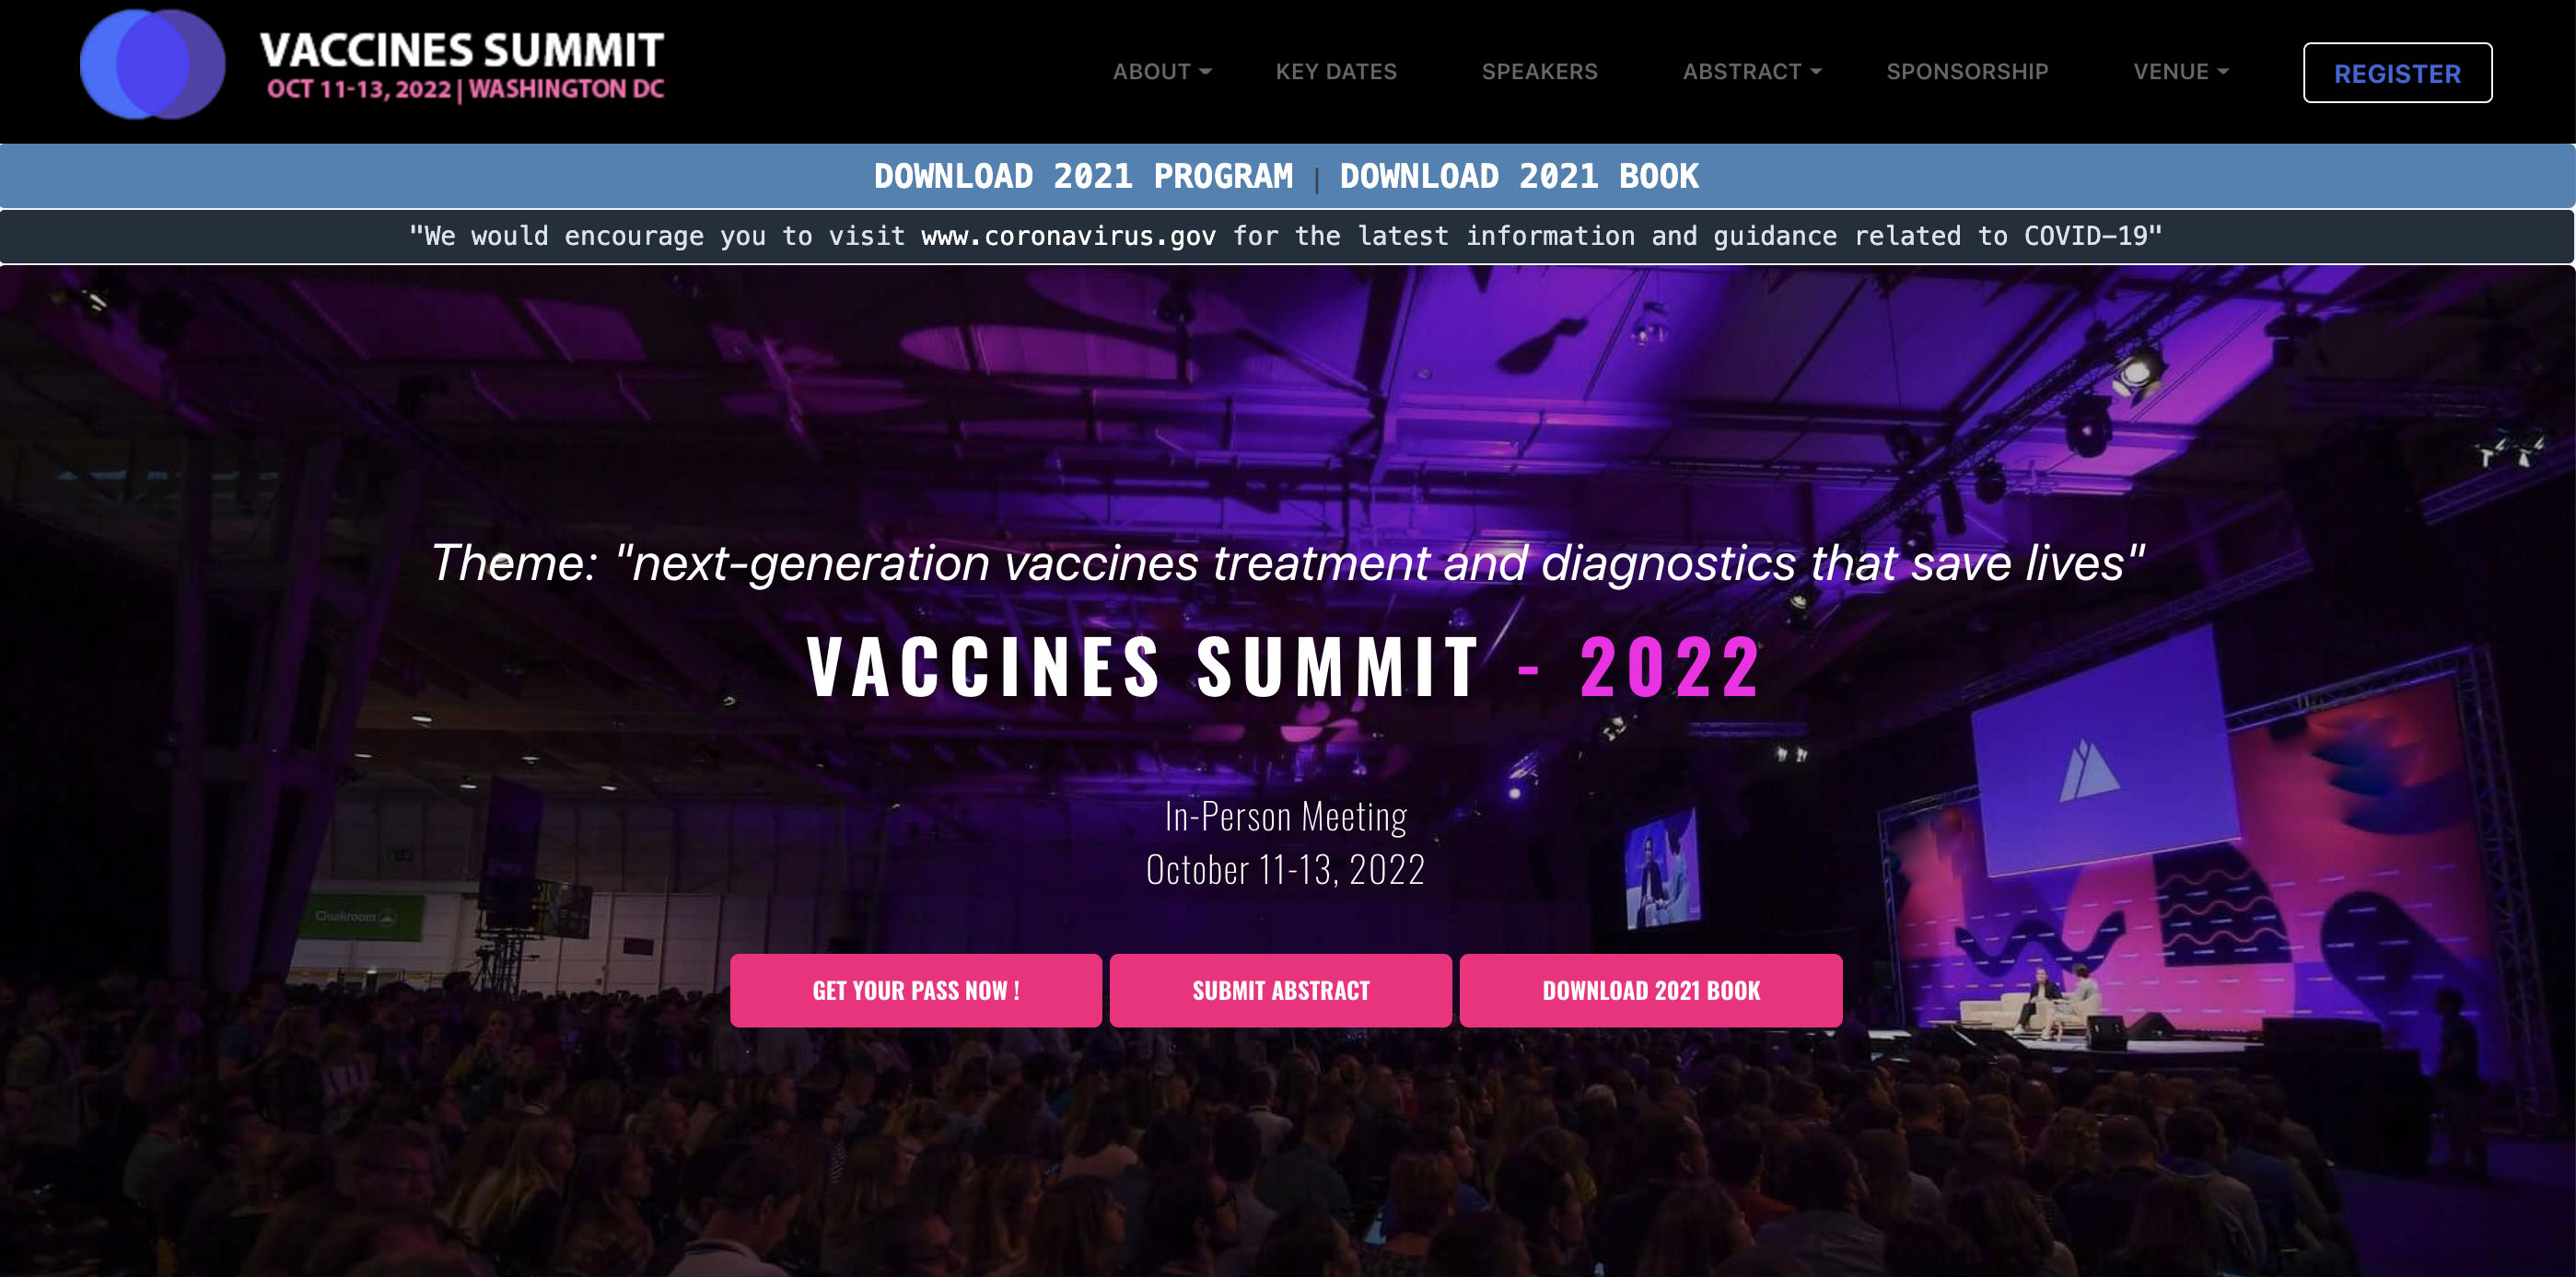 Vaccines Summit 2022